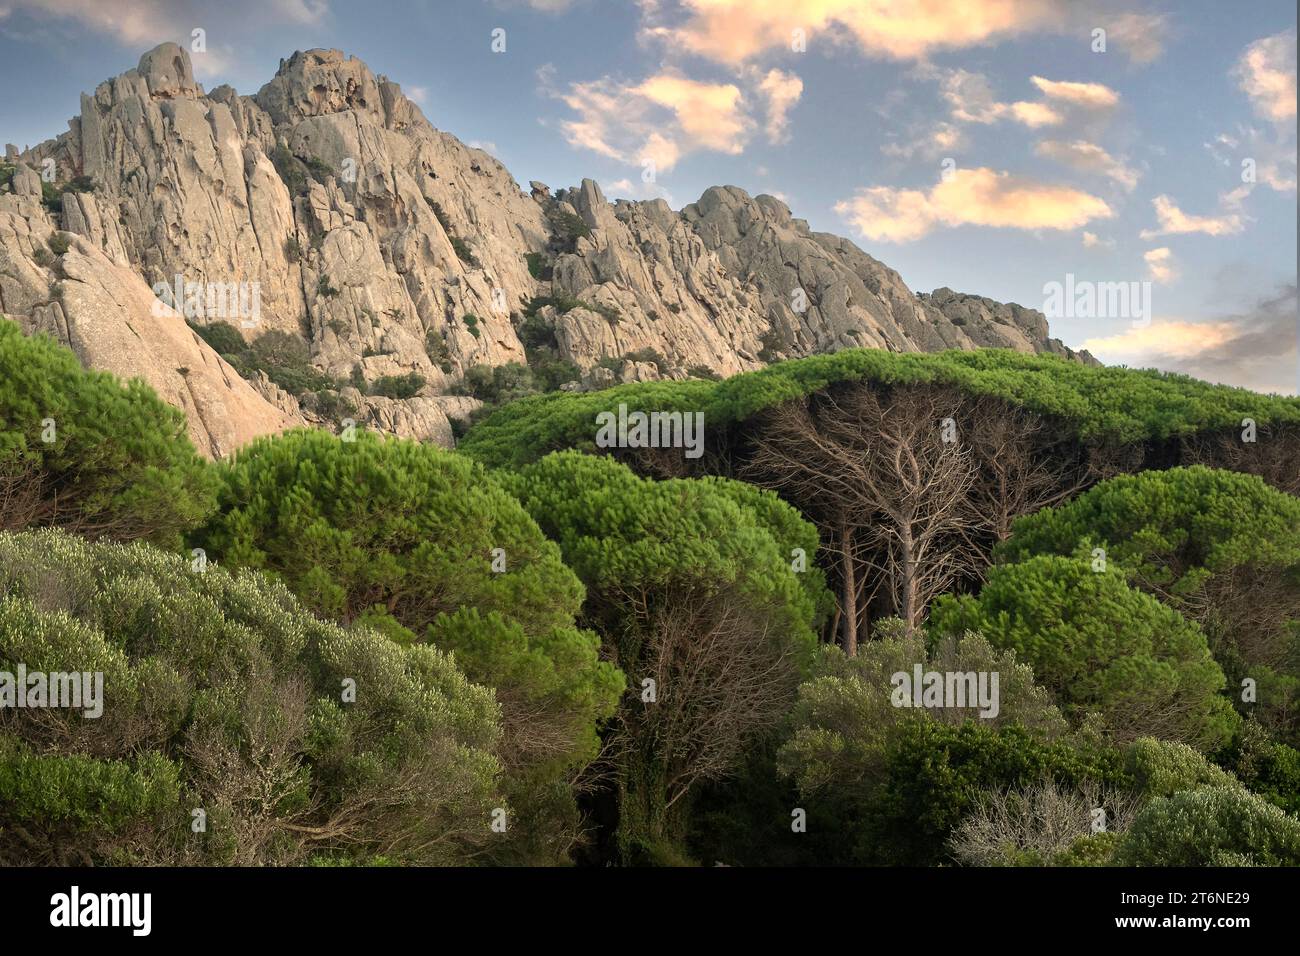 Pine tree forest and rocky mountain in Caprera island, Sardinia, Italy Stock Photo